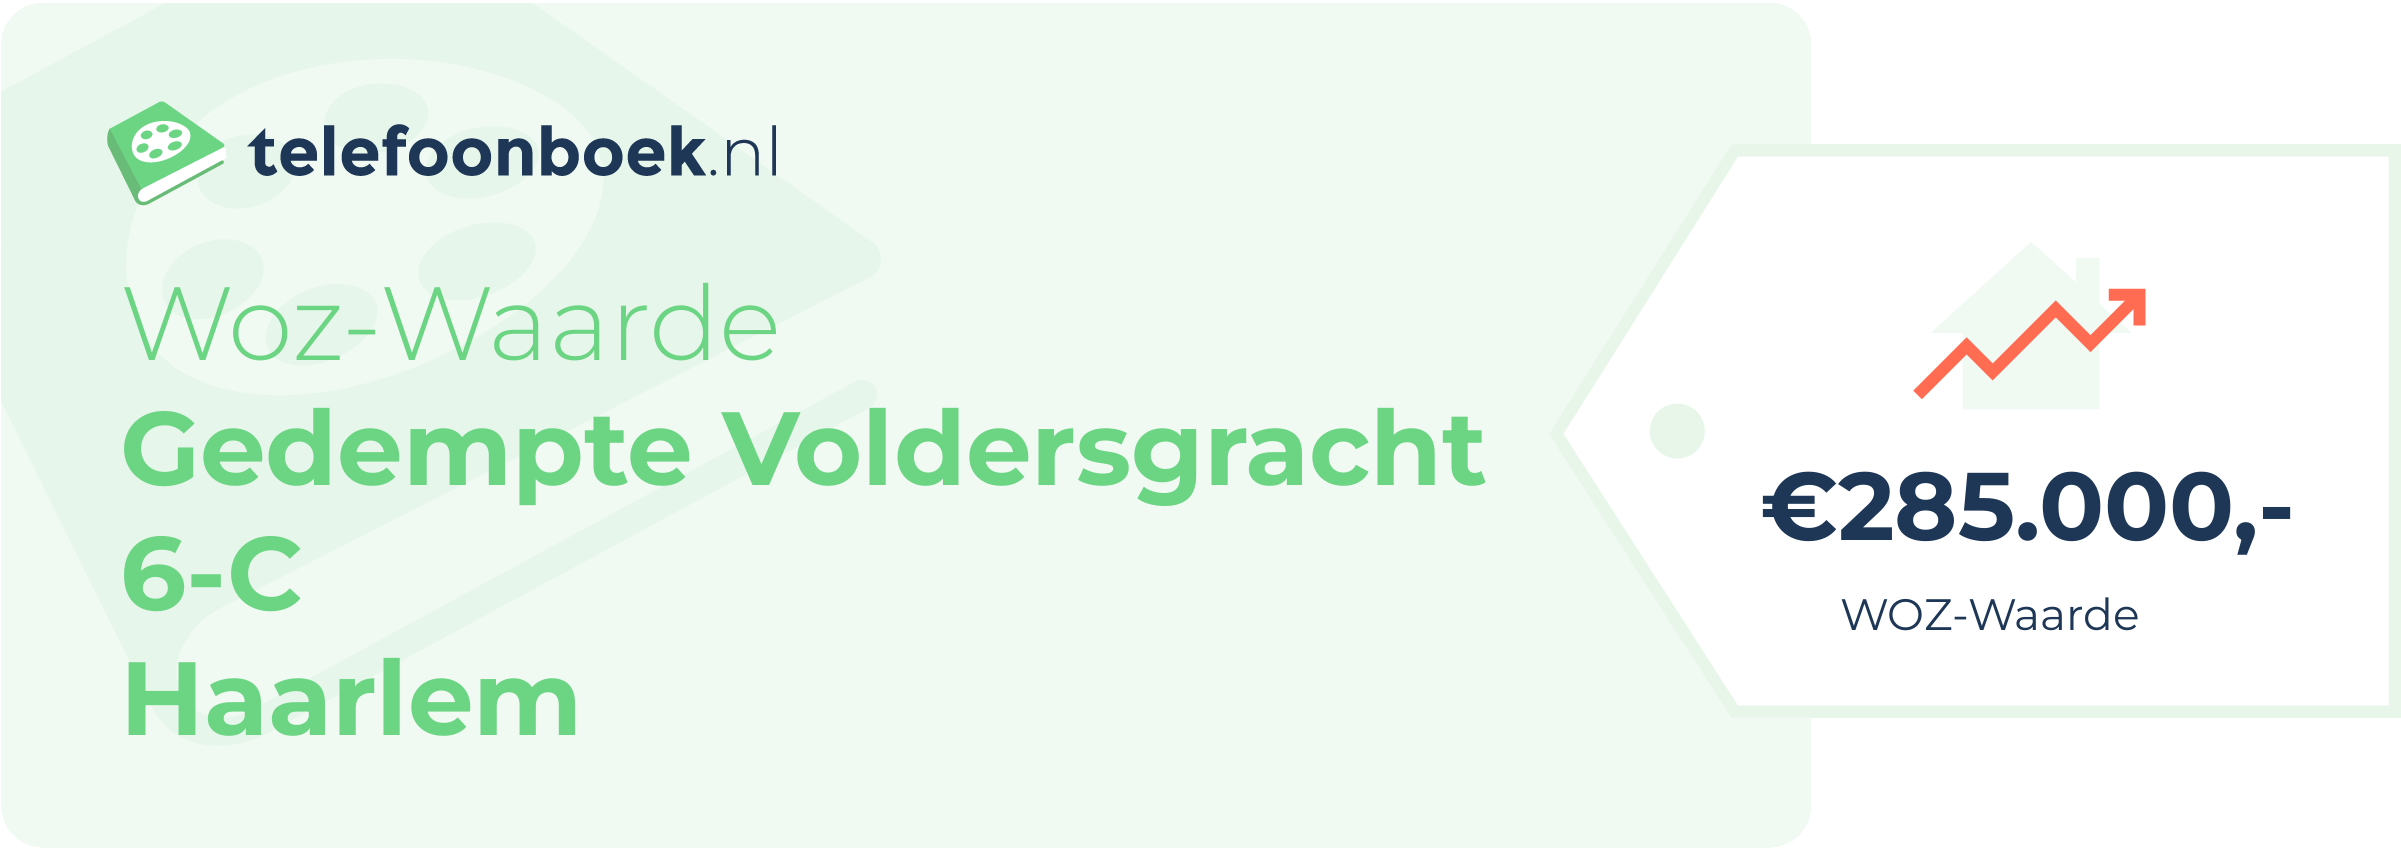 WOZ-waarde Gedempte Voldersgracht 6-C Haarlem